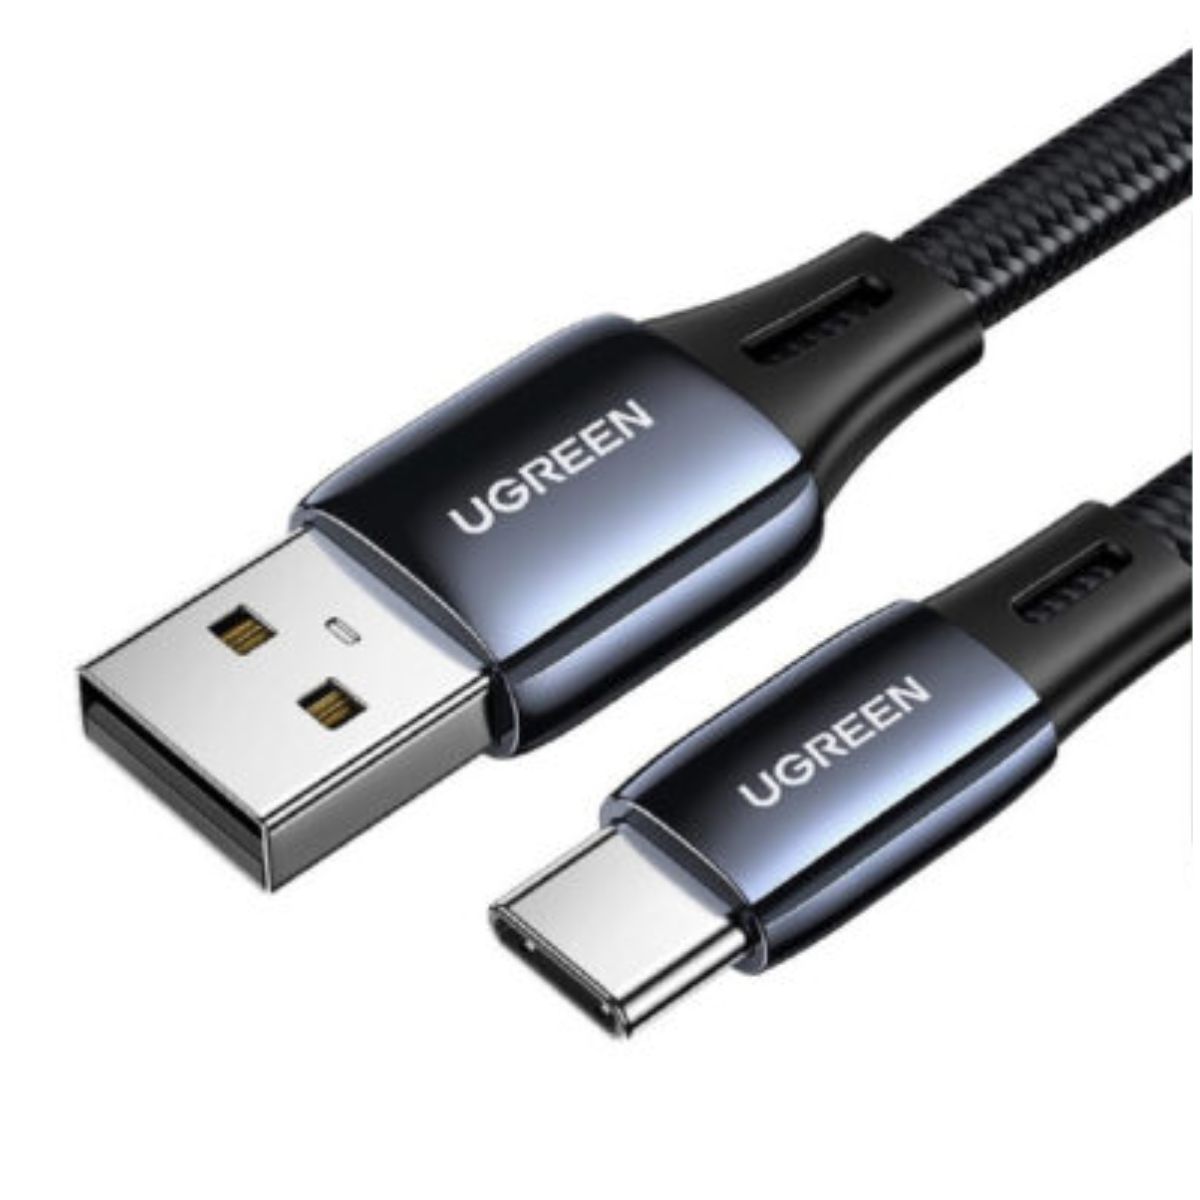 Cáp sạc nhanh USB Type C Ugreen US330, 70625 chiều dài 1m, 4 lớp bảo vệ, công suất tối đa 18W